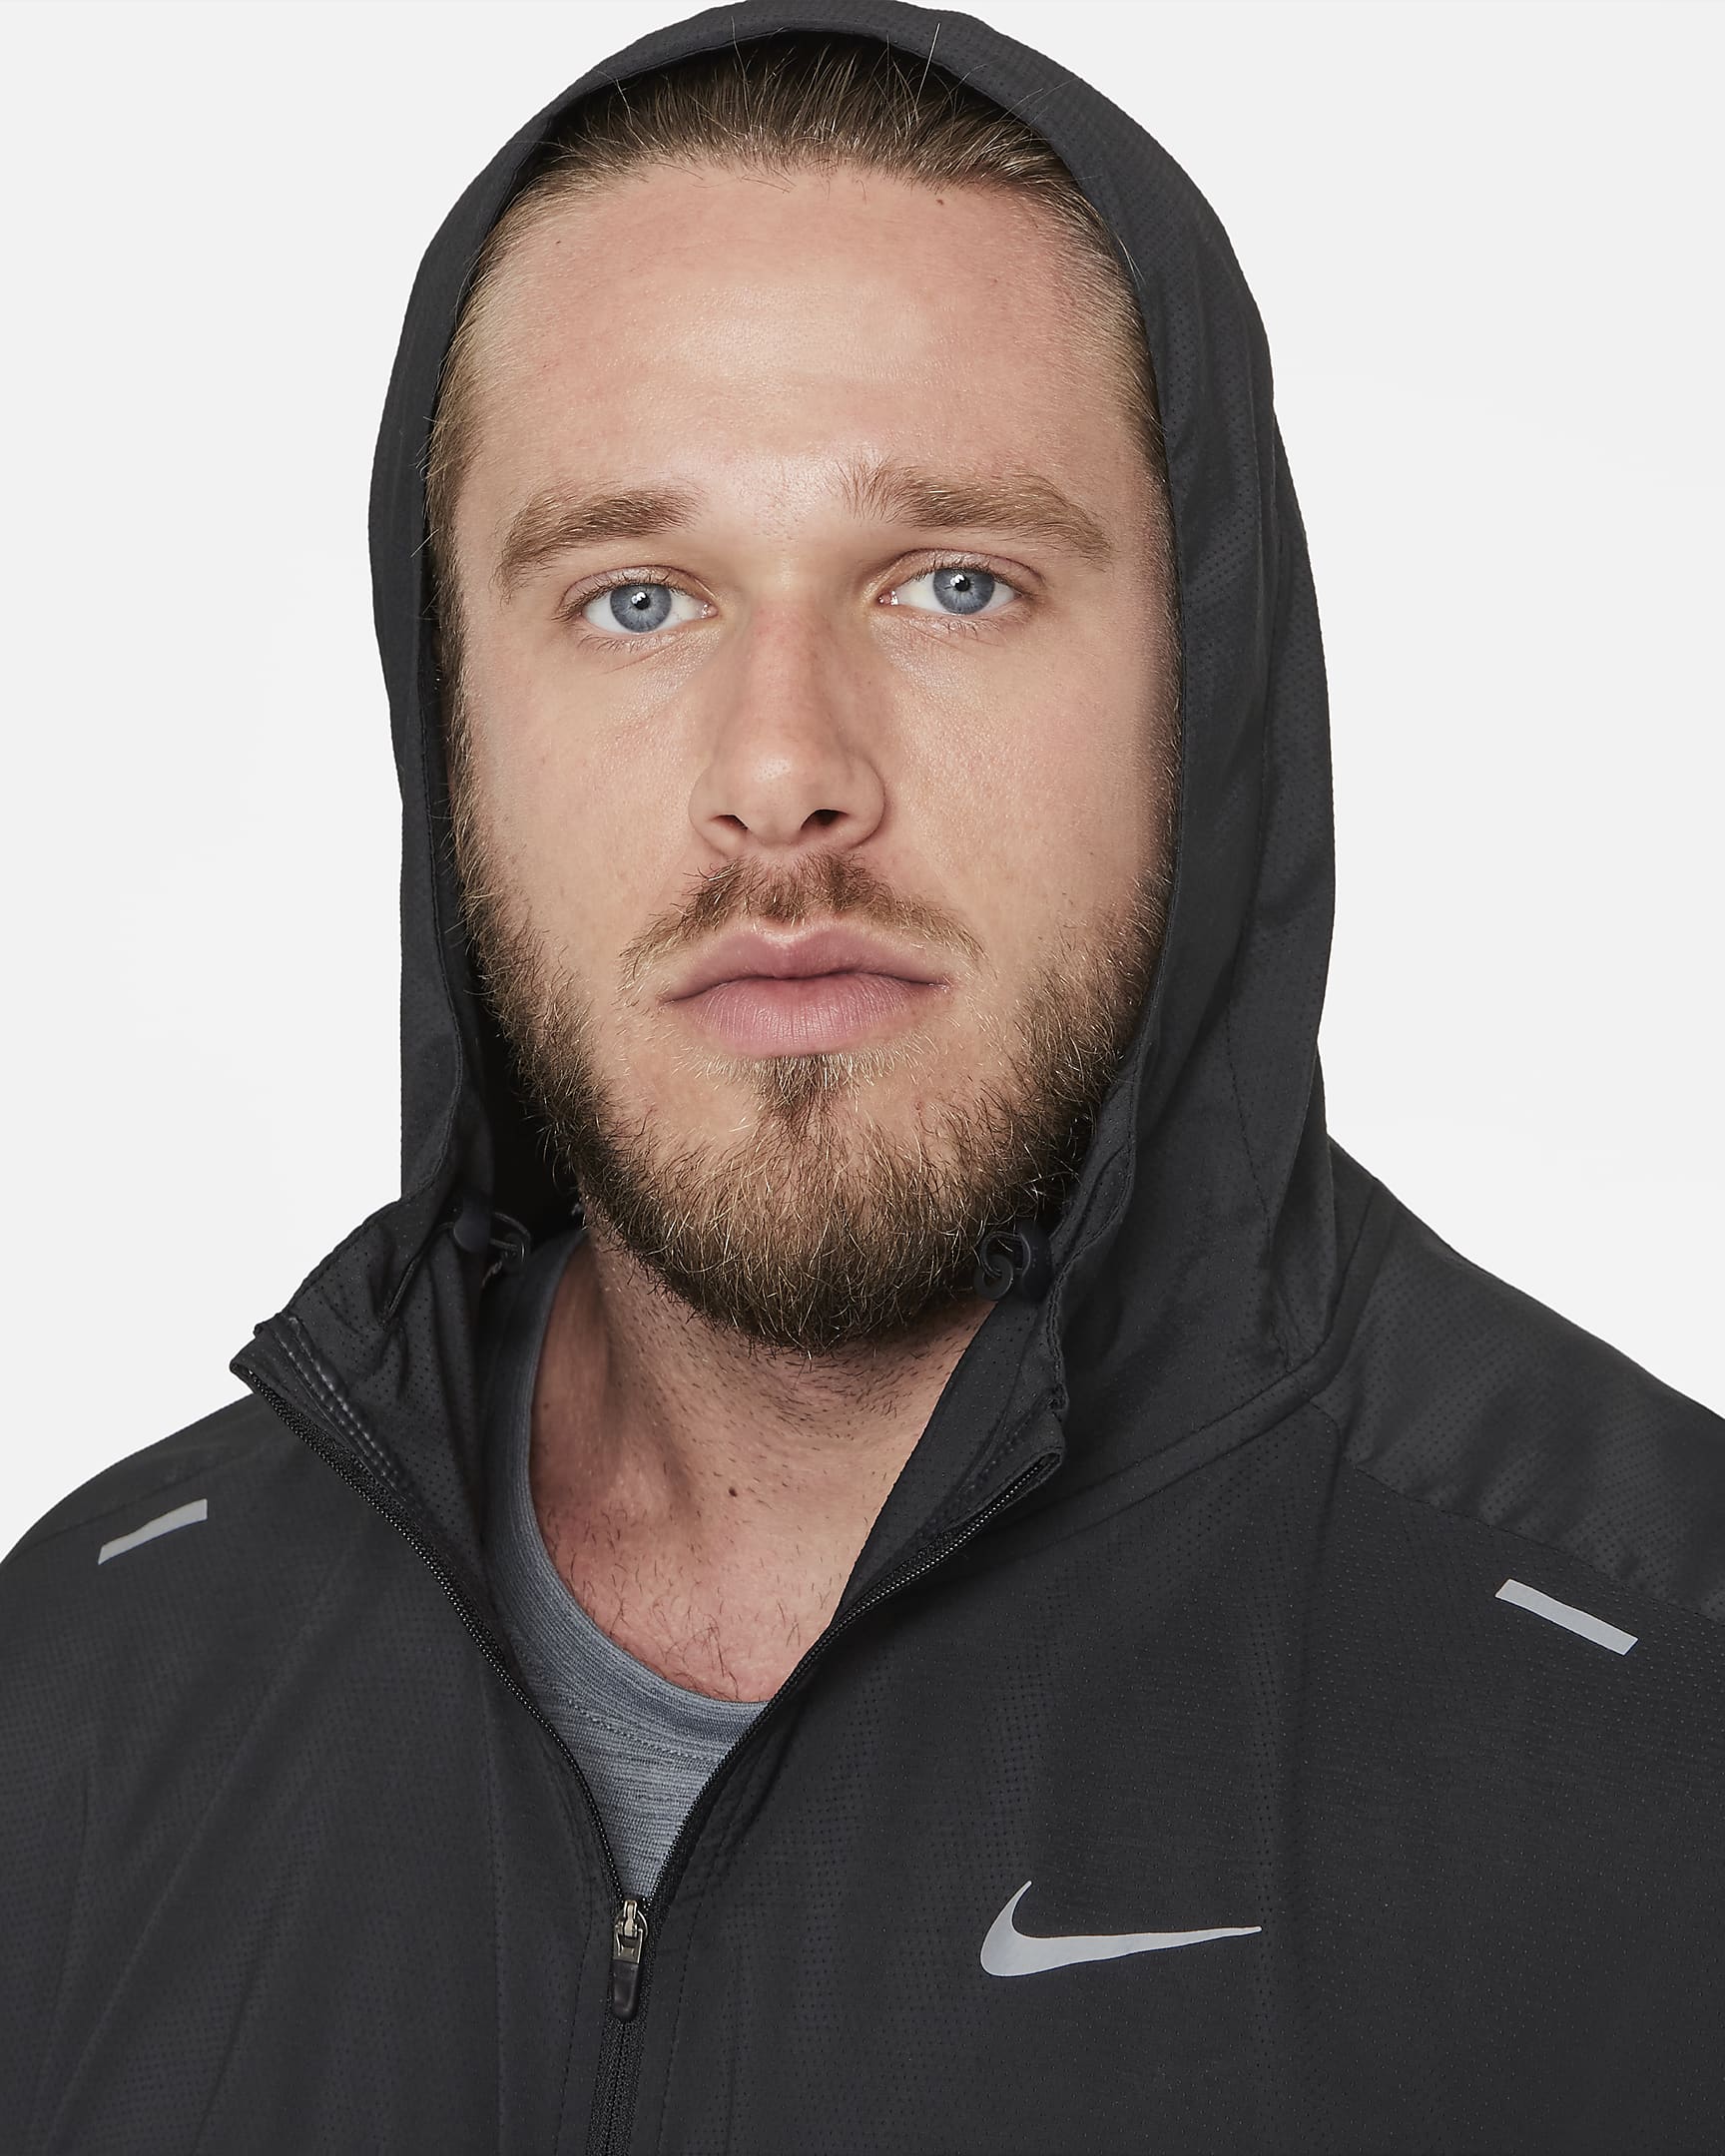 Giacca da running Nike Windrunner - Uomo - Nero